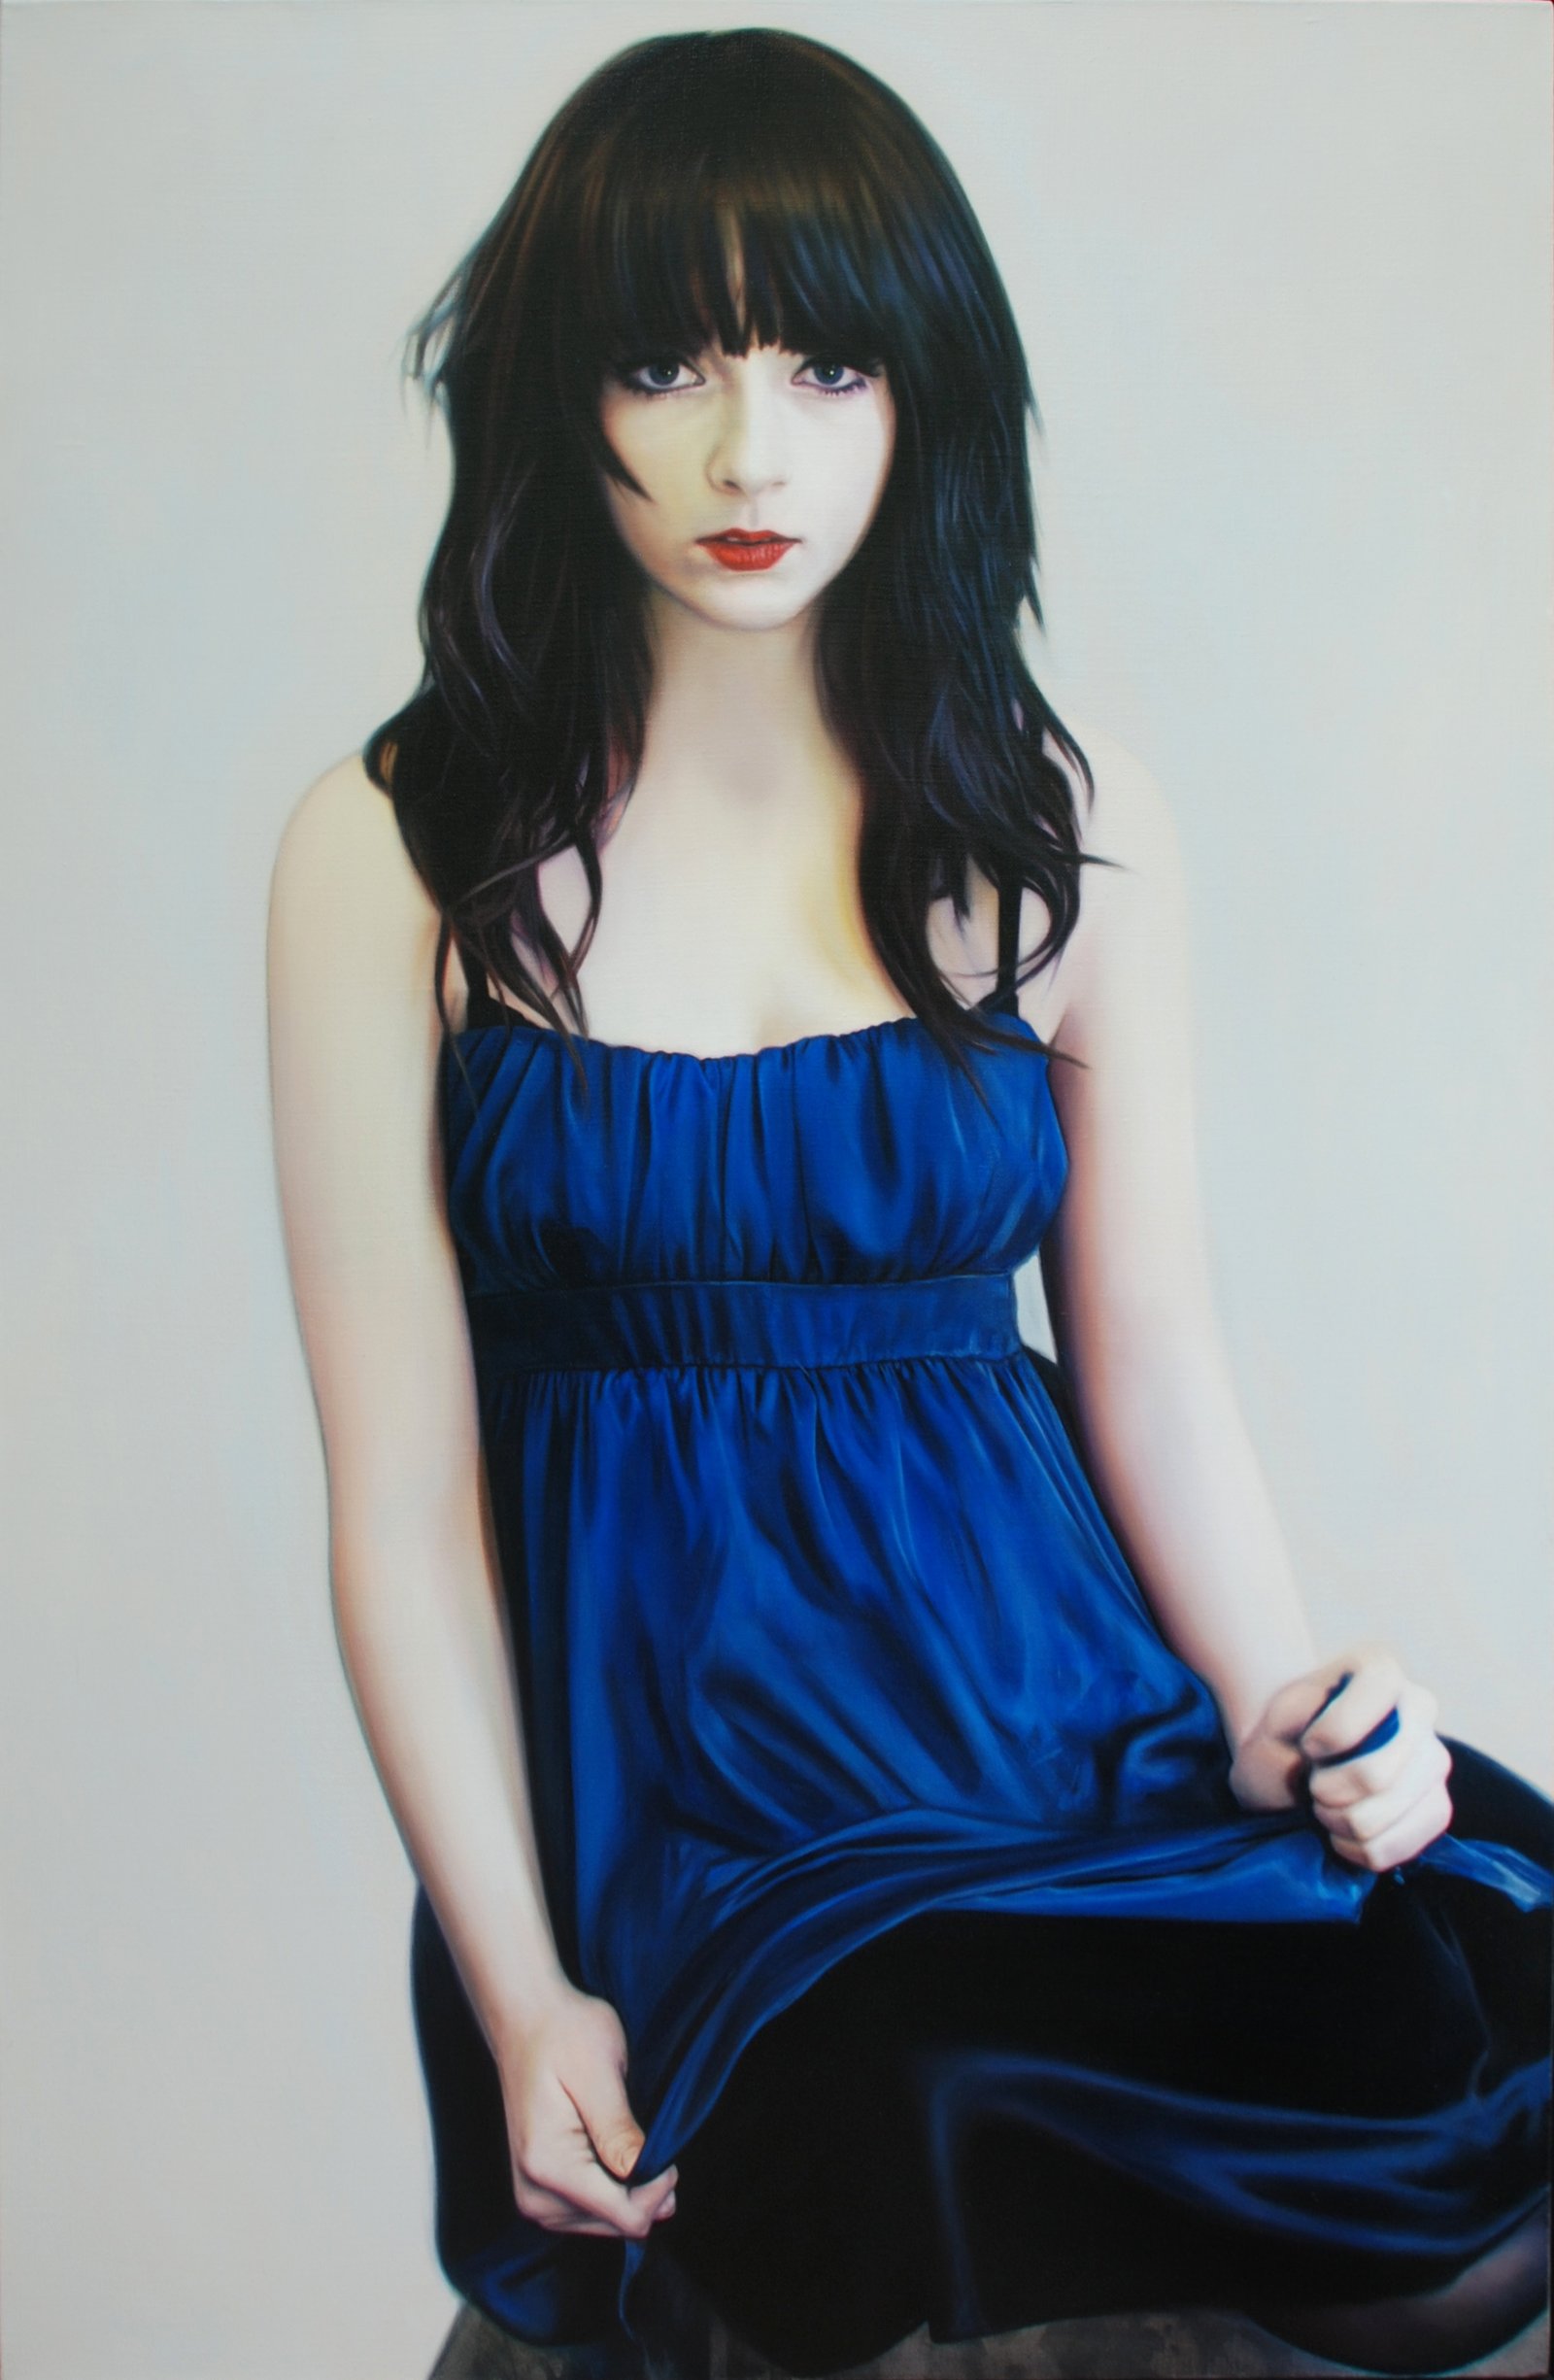 Girl in Blue Dress by pnmunoz on DeviantArt